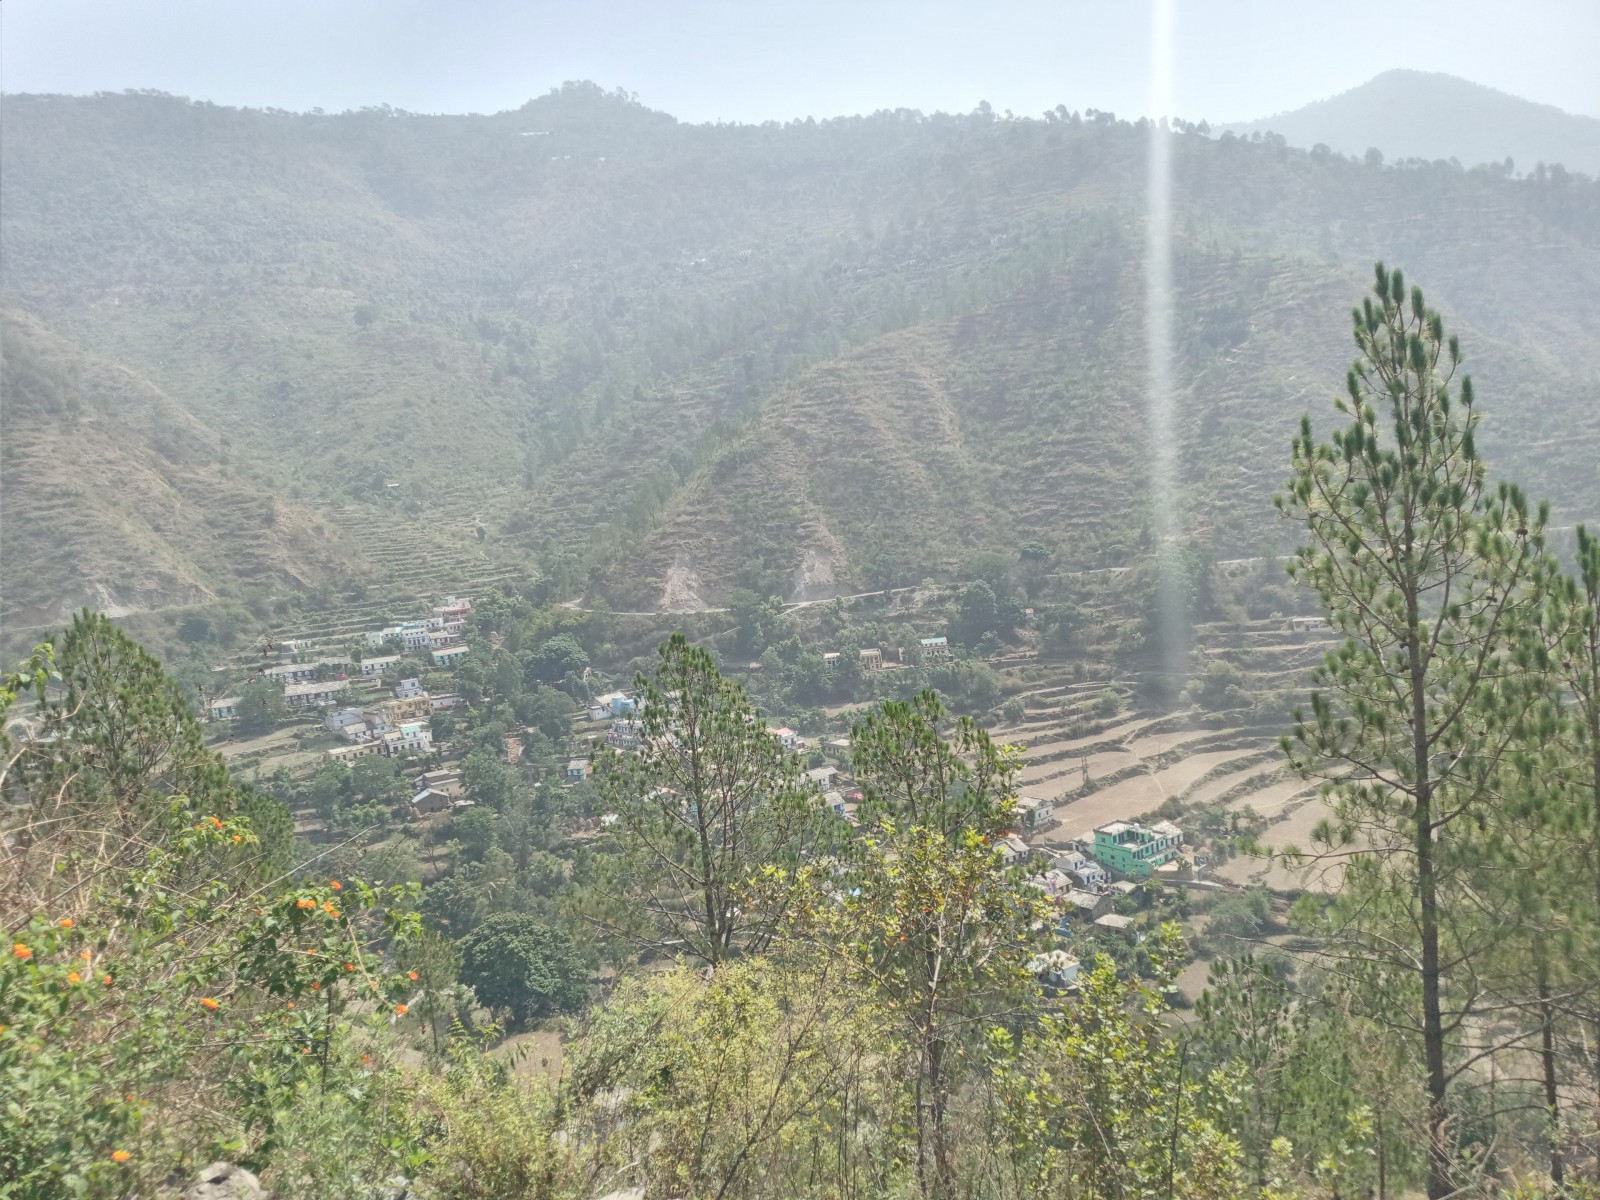 Binkote village, Nainital